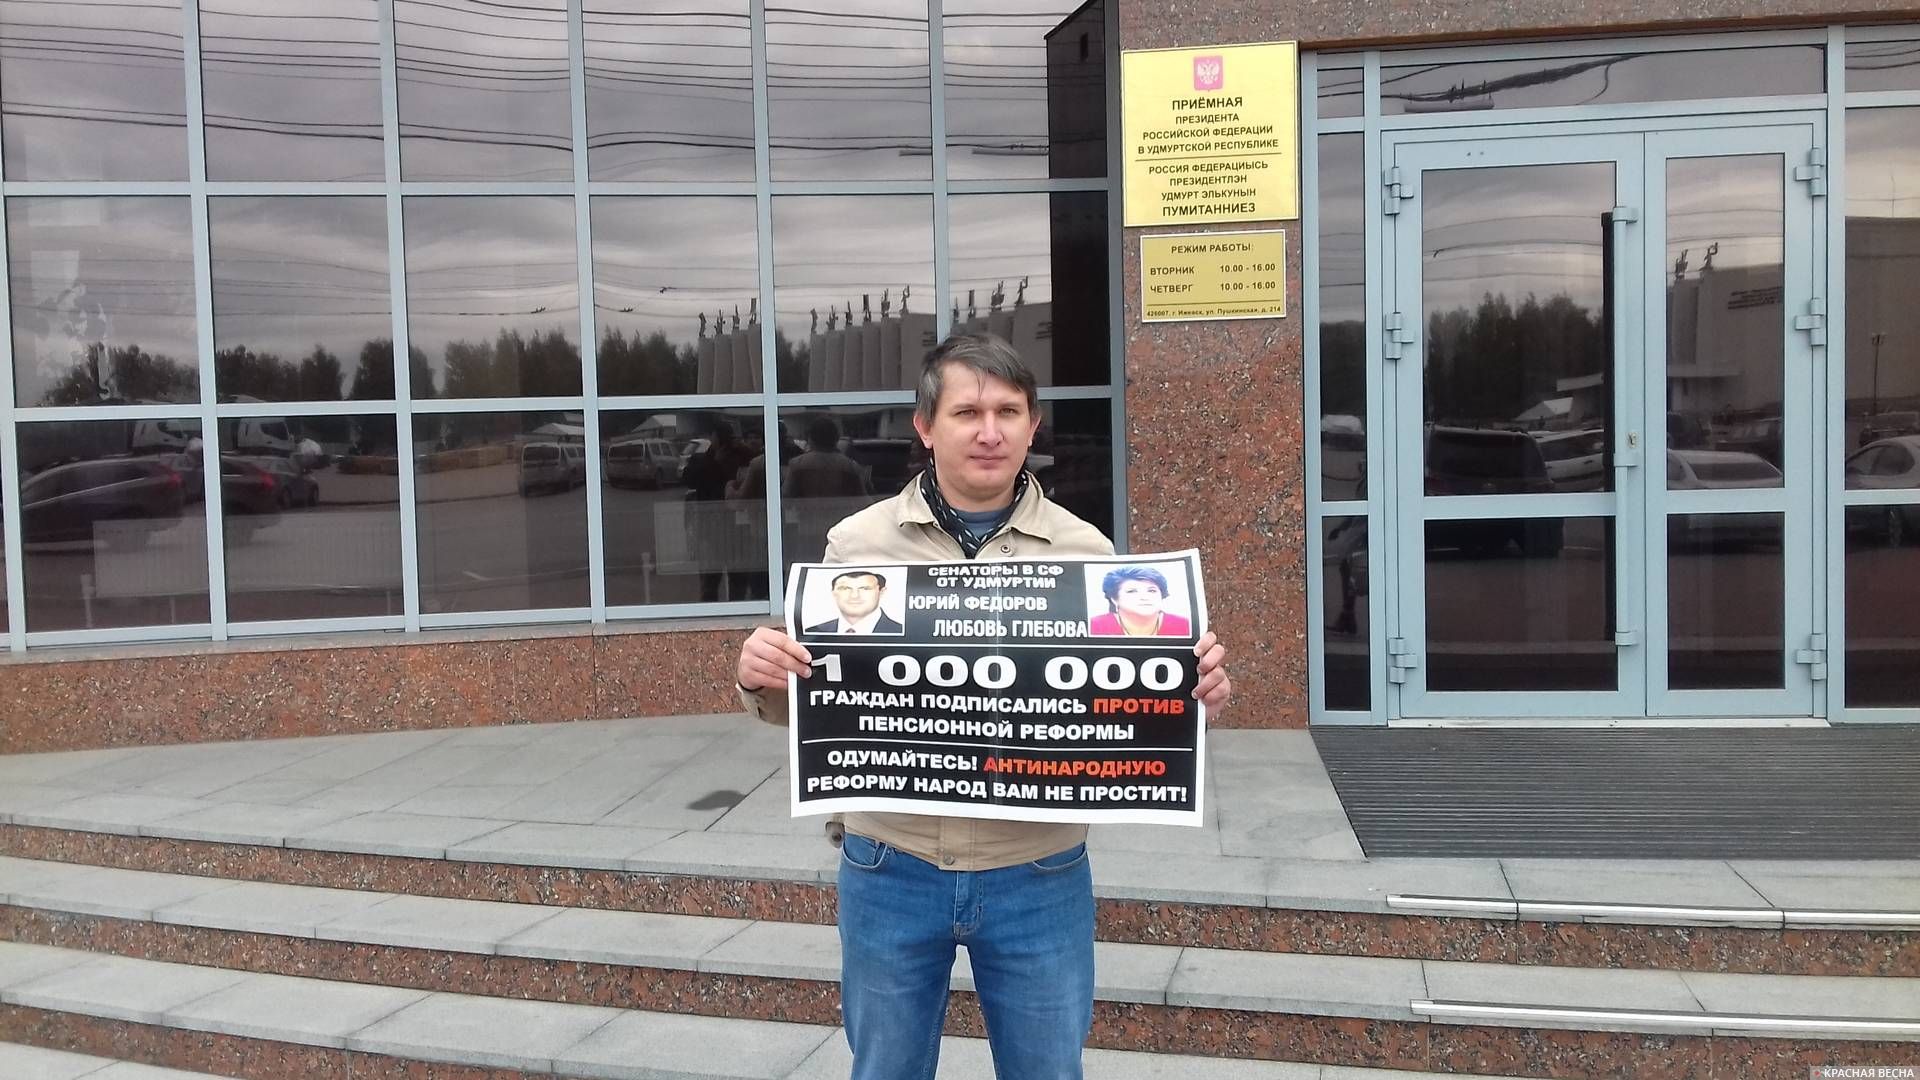 Одиночный пикет против повышения пенсионного возраста в Ижевске 3 октября 2018 года